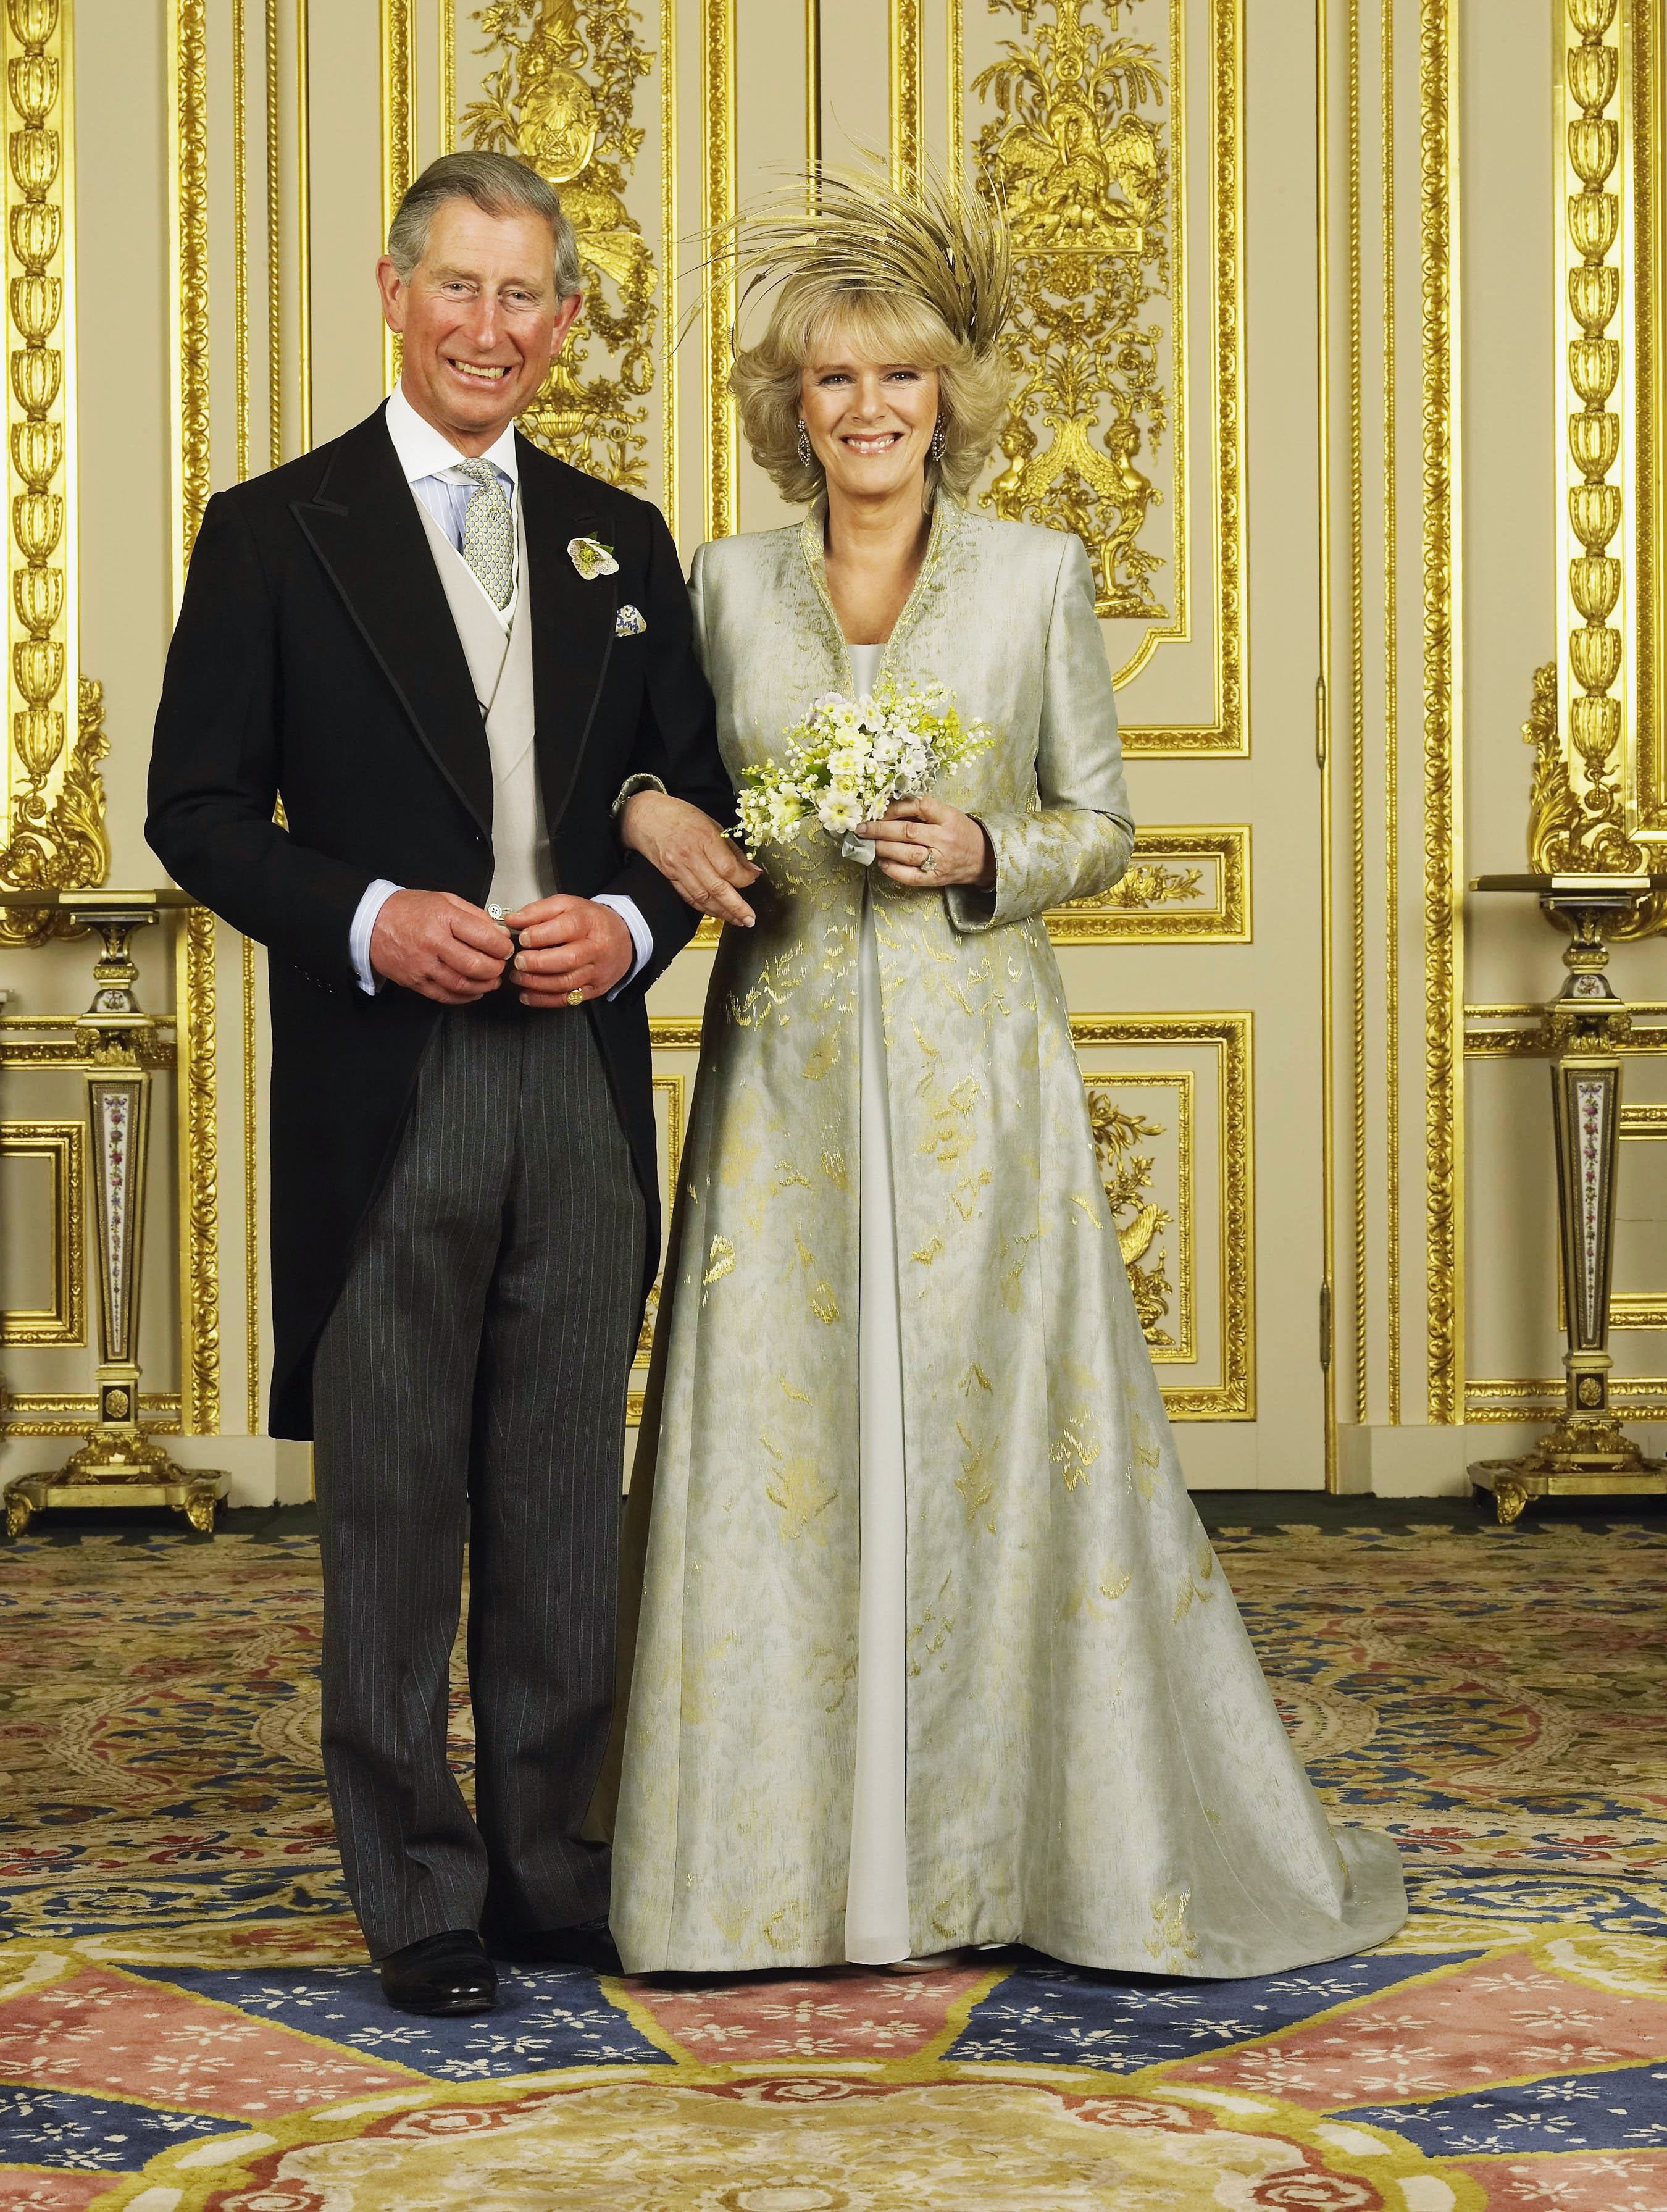 Le prince Charles et Camilla, duchesse de Cornouailles, photographiés dans le salon blanc du château de Windsor après leur cérémonie de mariage le 9 avril 2005 à Windsor, en Angleterre | Source : Getty Images